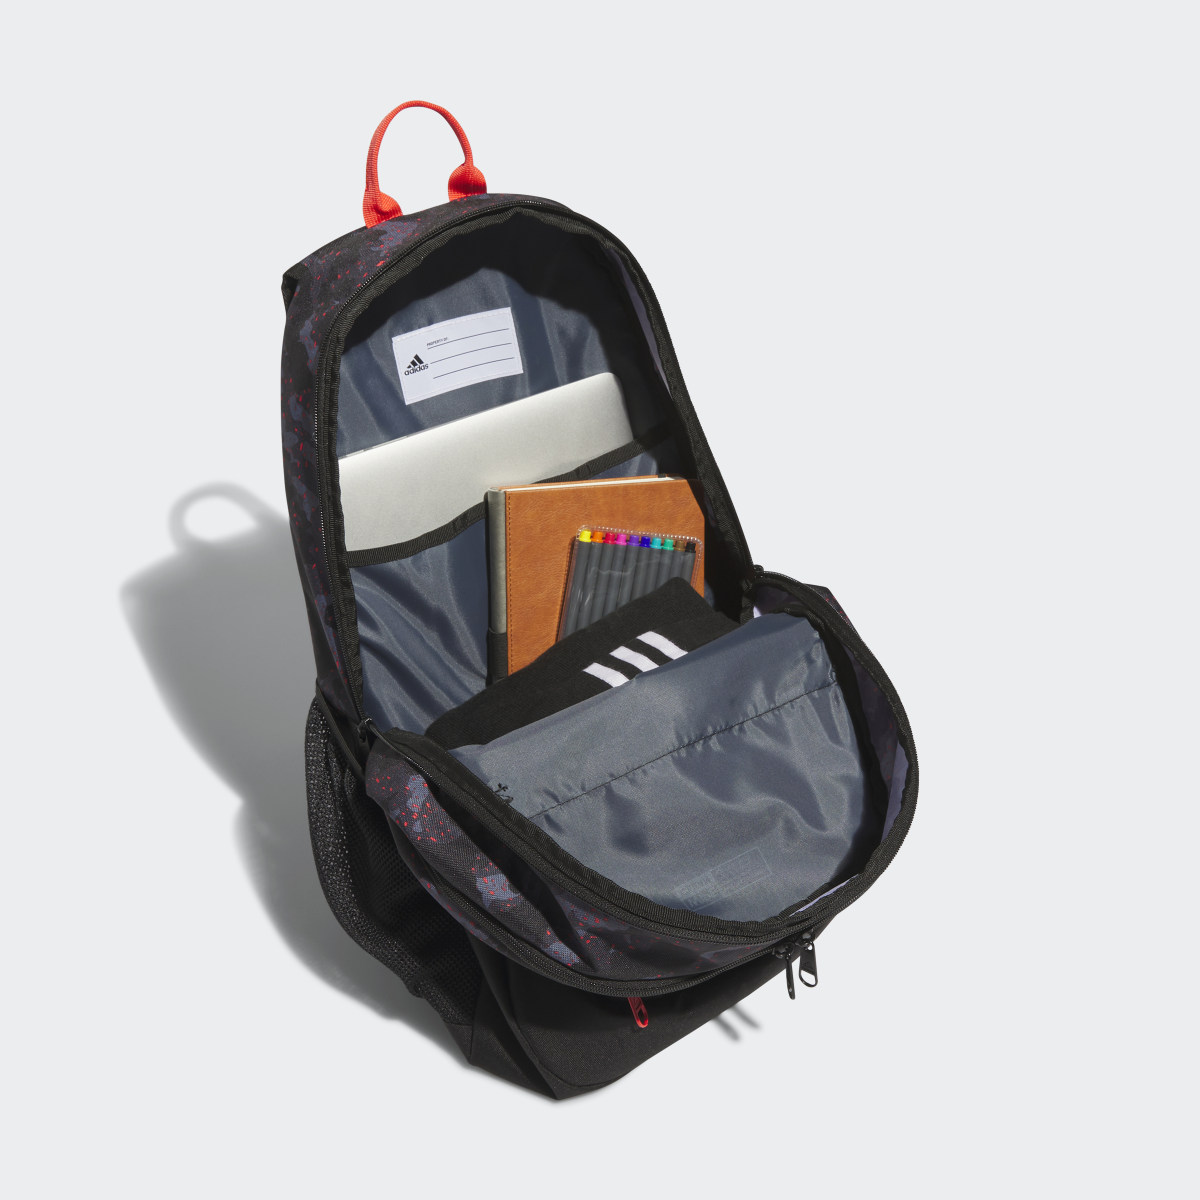 Adidas Foundation 6 Backpack. 5